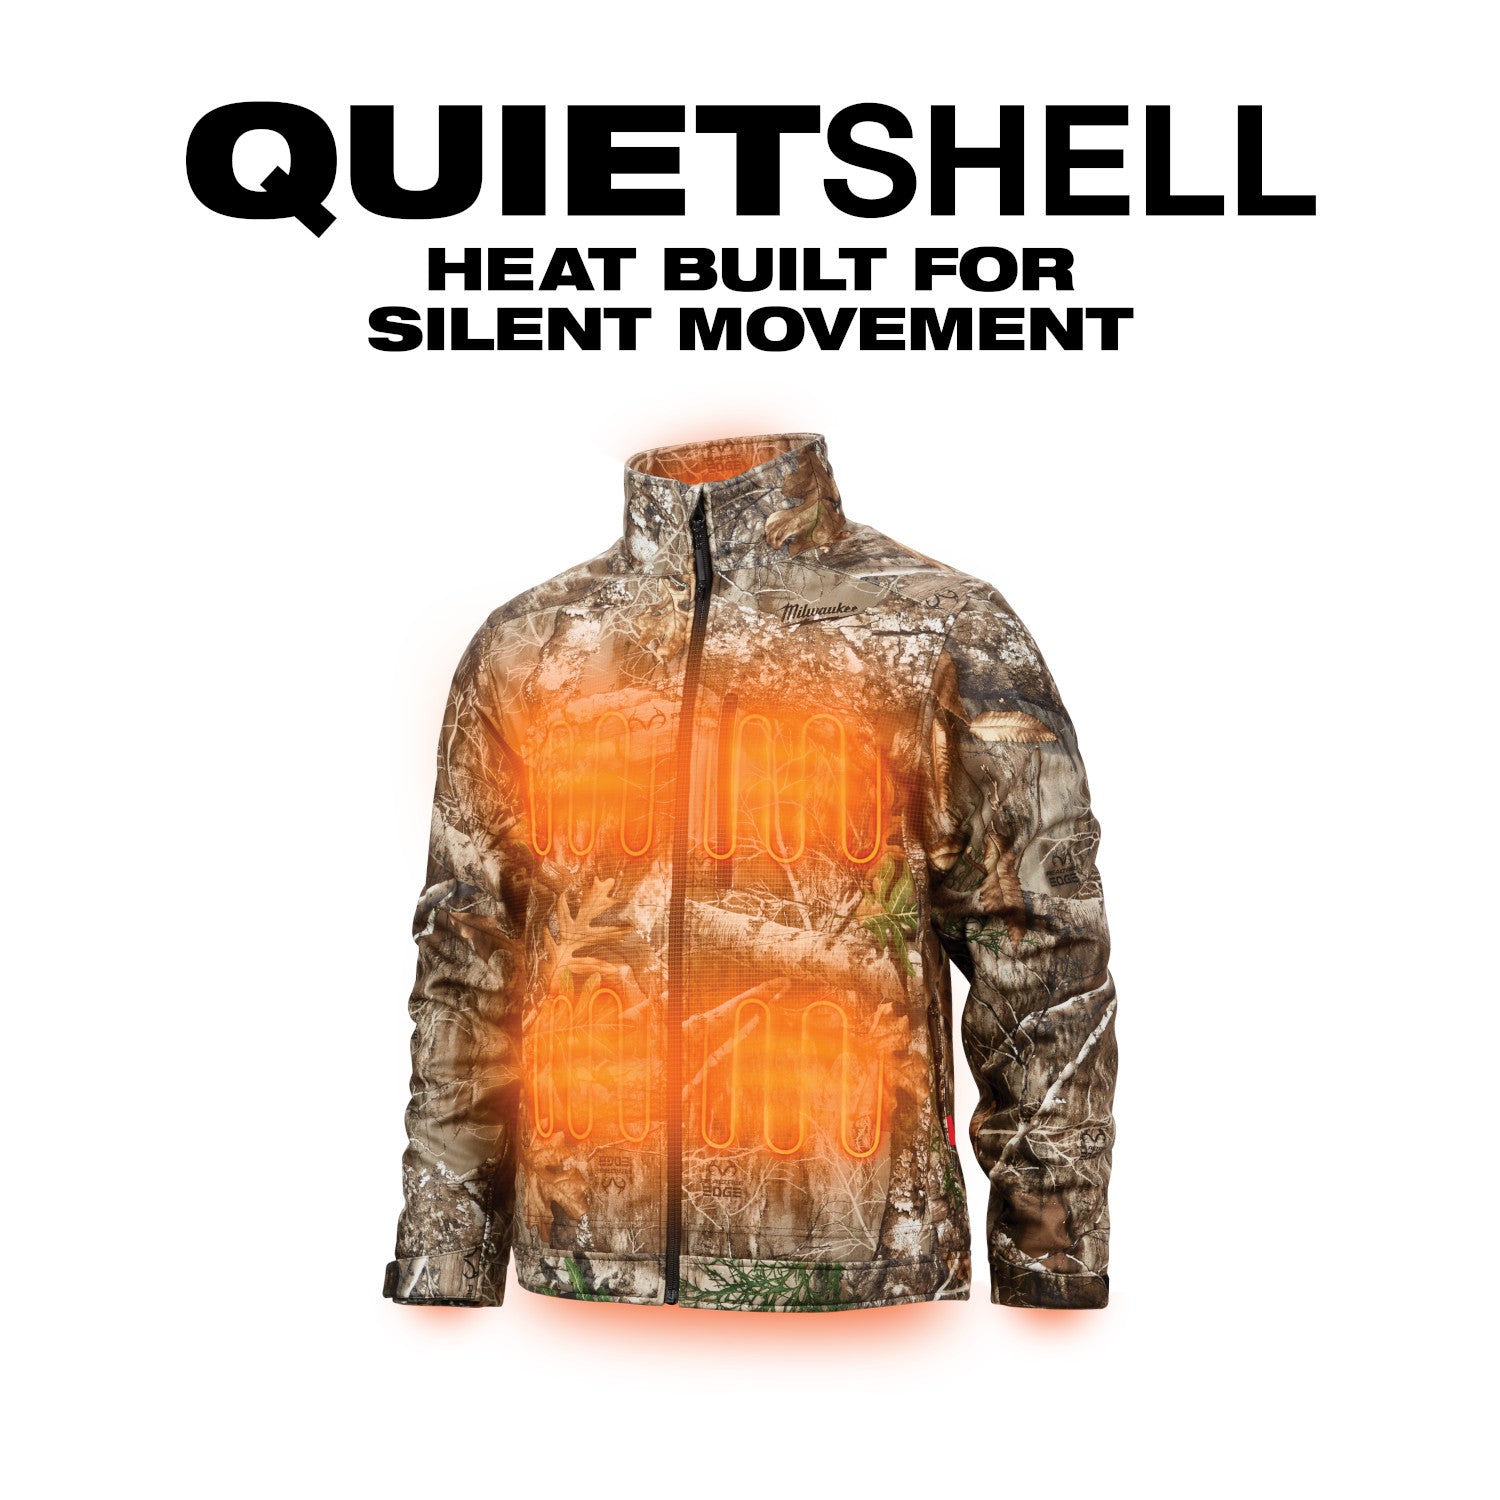 MILWAUKEE 224-21 M12™ Heated QUIETSHELL Jacket Kit